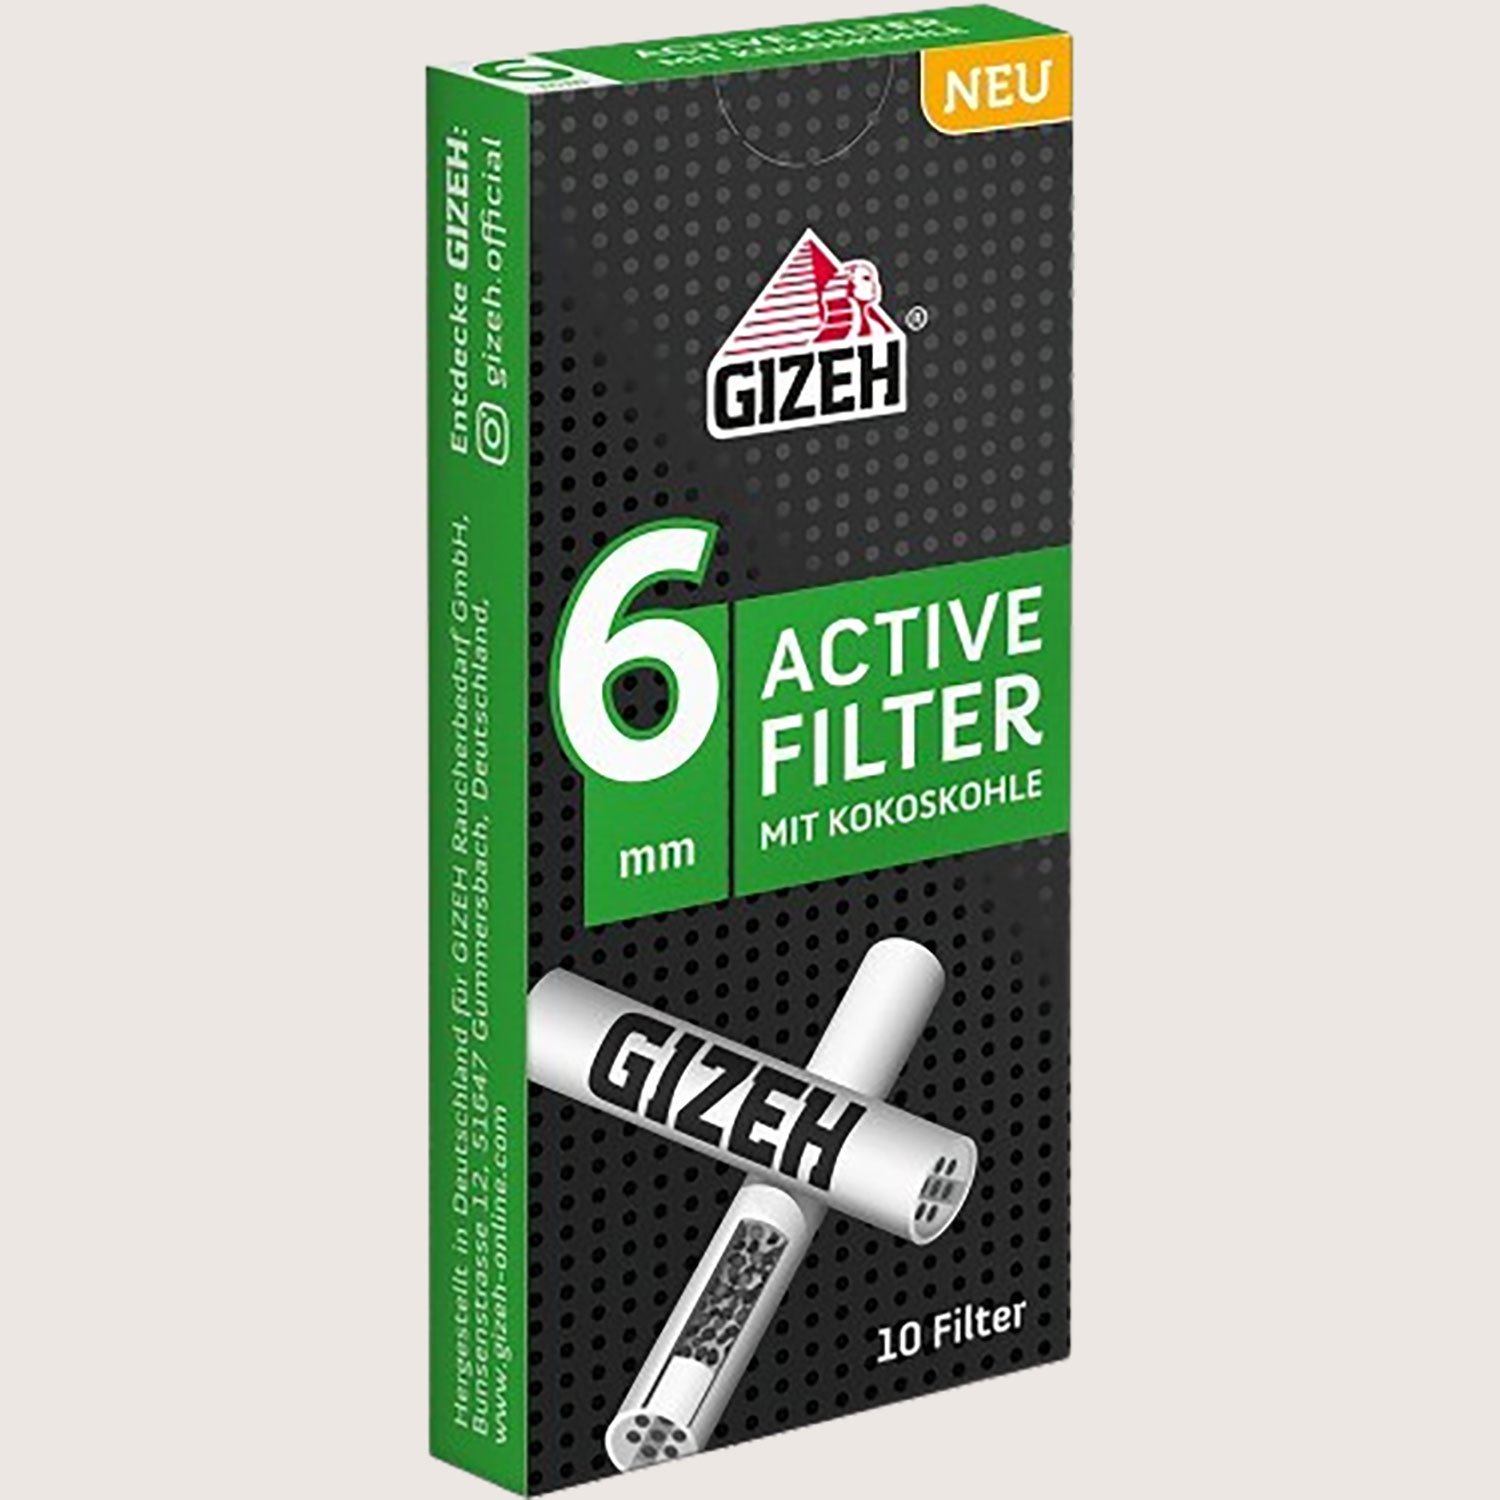 Gizeh Black Active Filter 6 mm 10 Filter